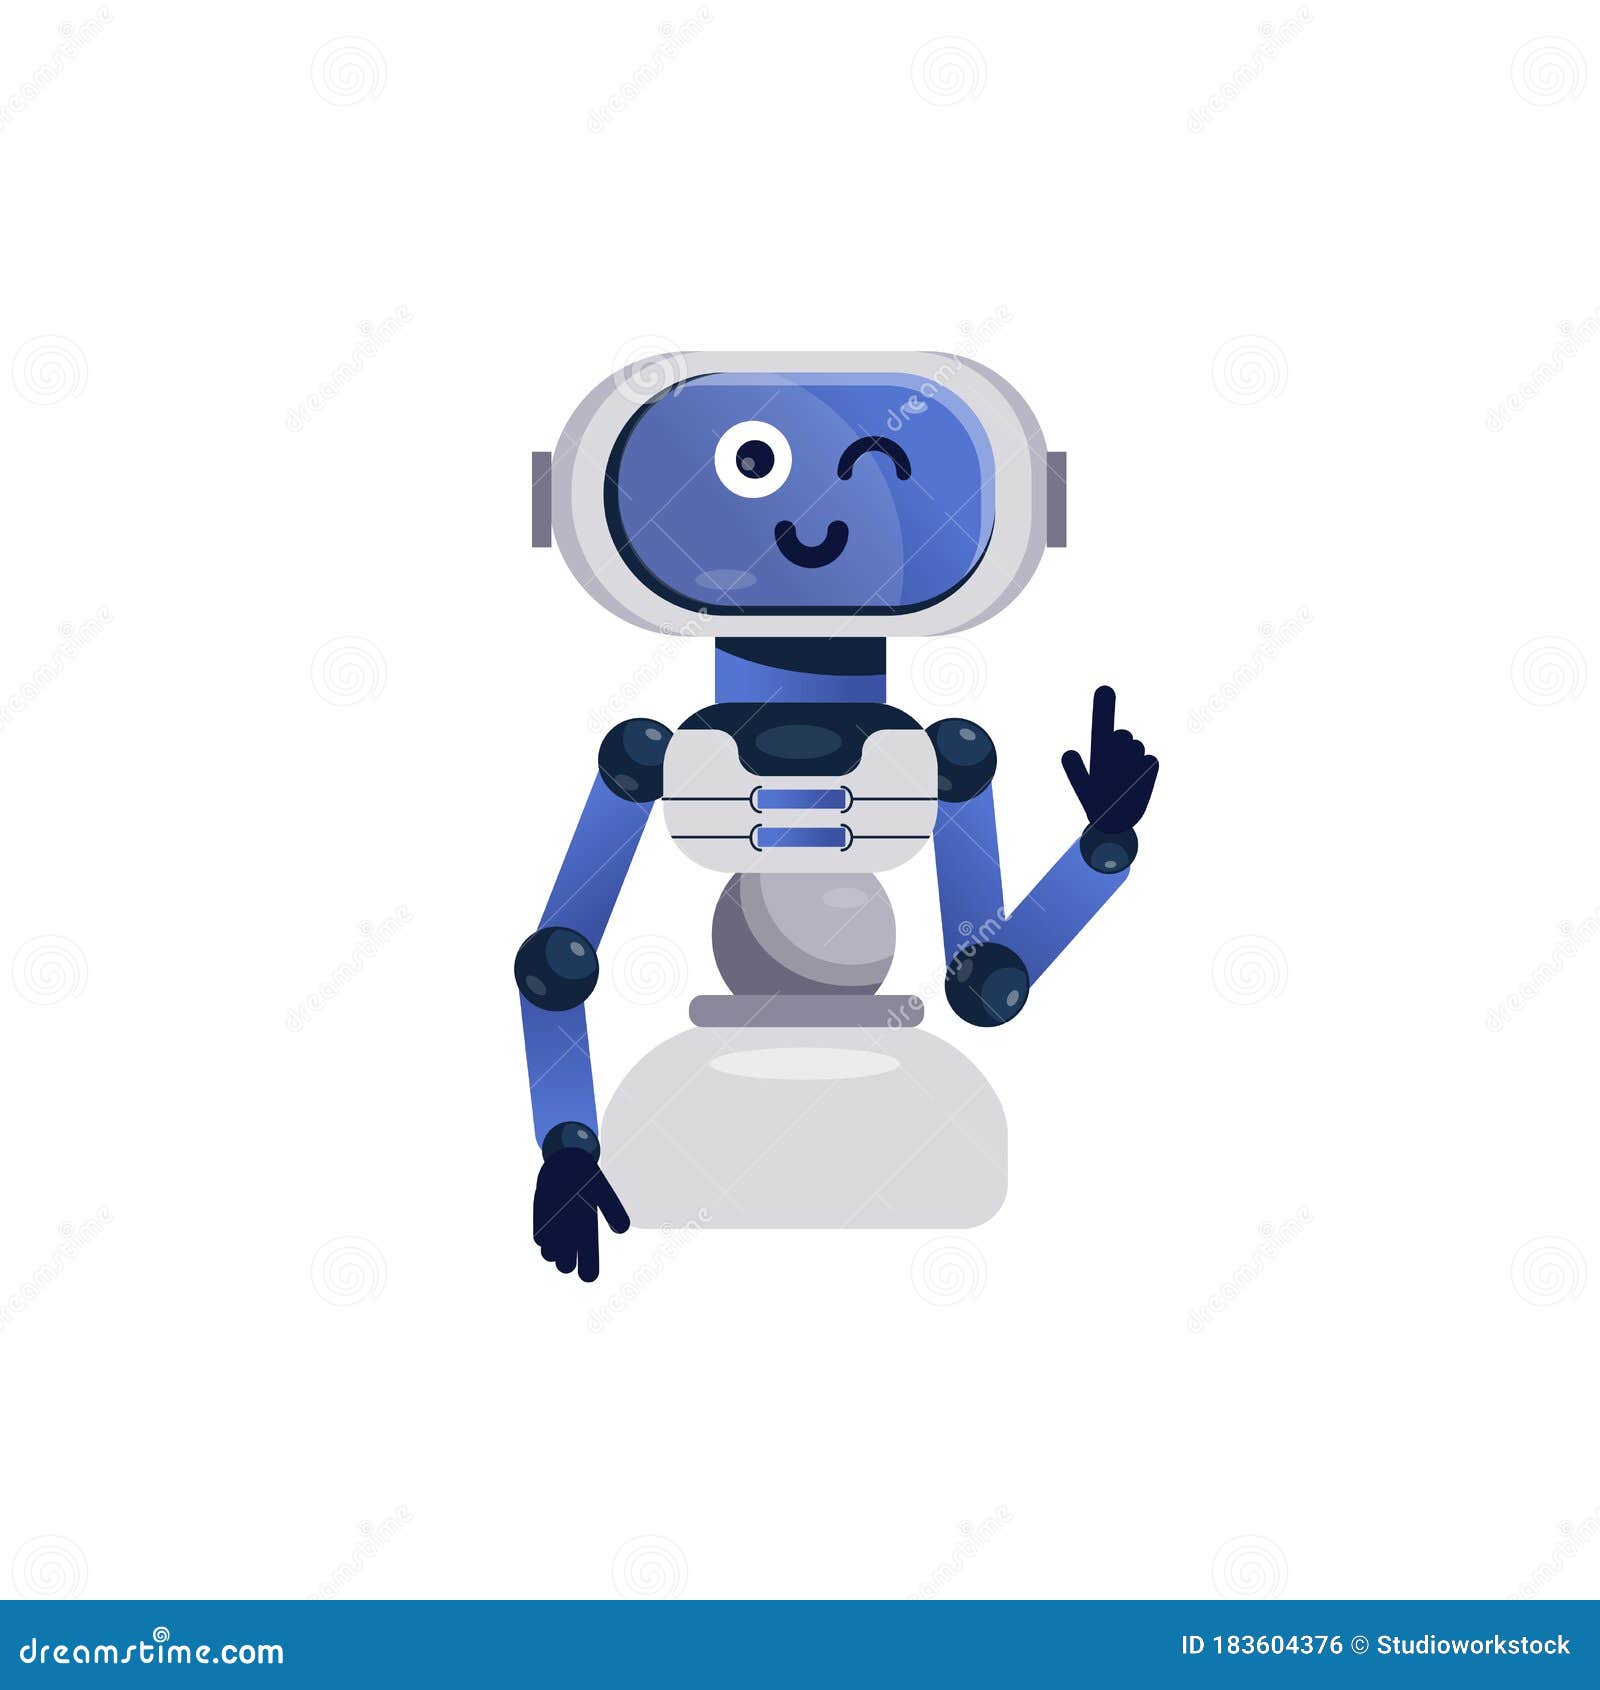 Jouet De Robot Icone Gay De Bot De Chat Illustration De Vecteur Illustration Du Electronique Cyborg